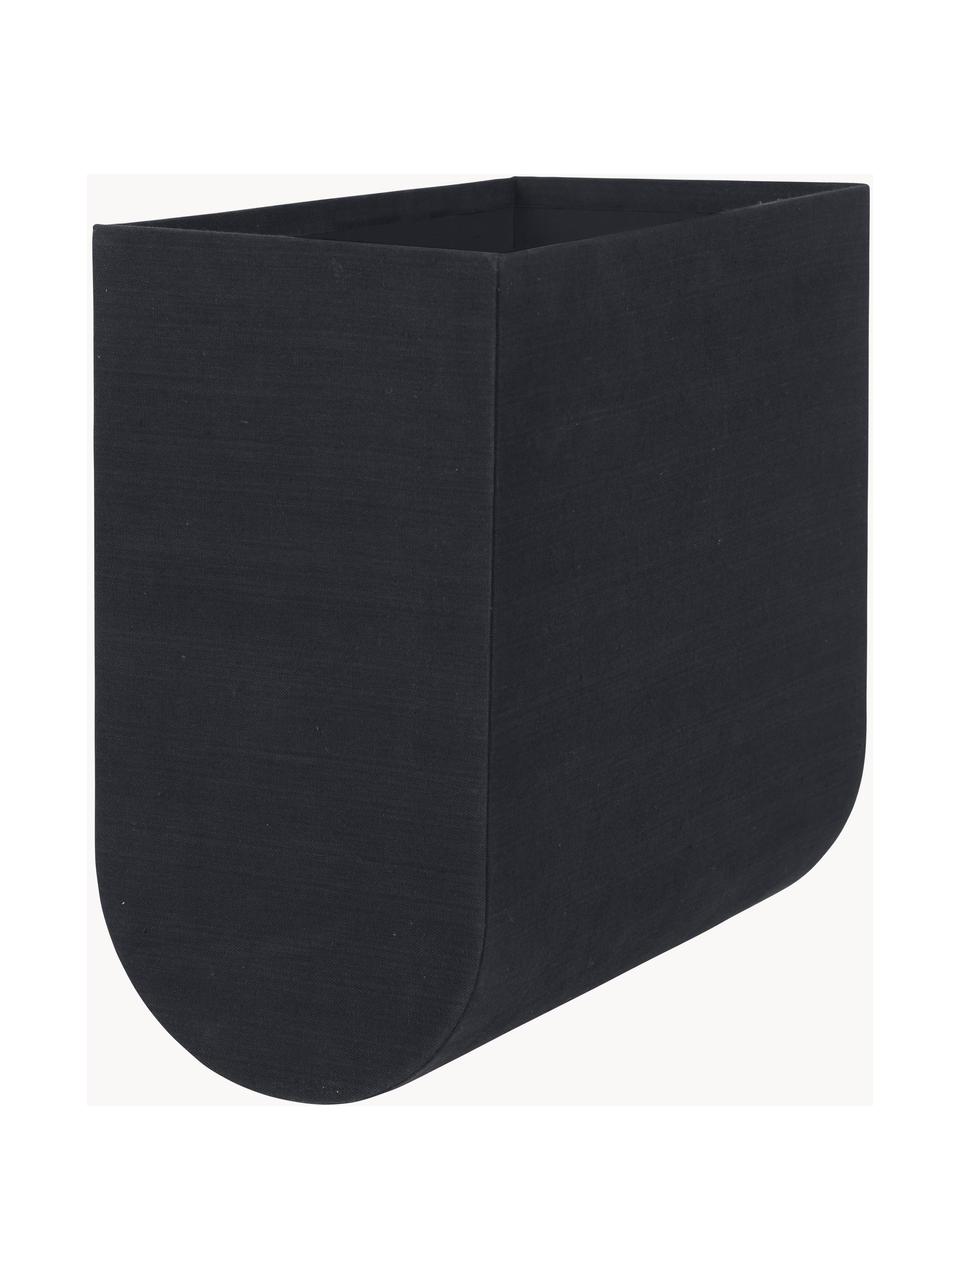 Handgefertigte Aufbewahrungsbox Curved, B 20 cm, Bezug: 100 % Baumwolle, Korpus: Pappe, Schwarz, B 20 x H 39 cm